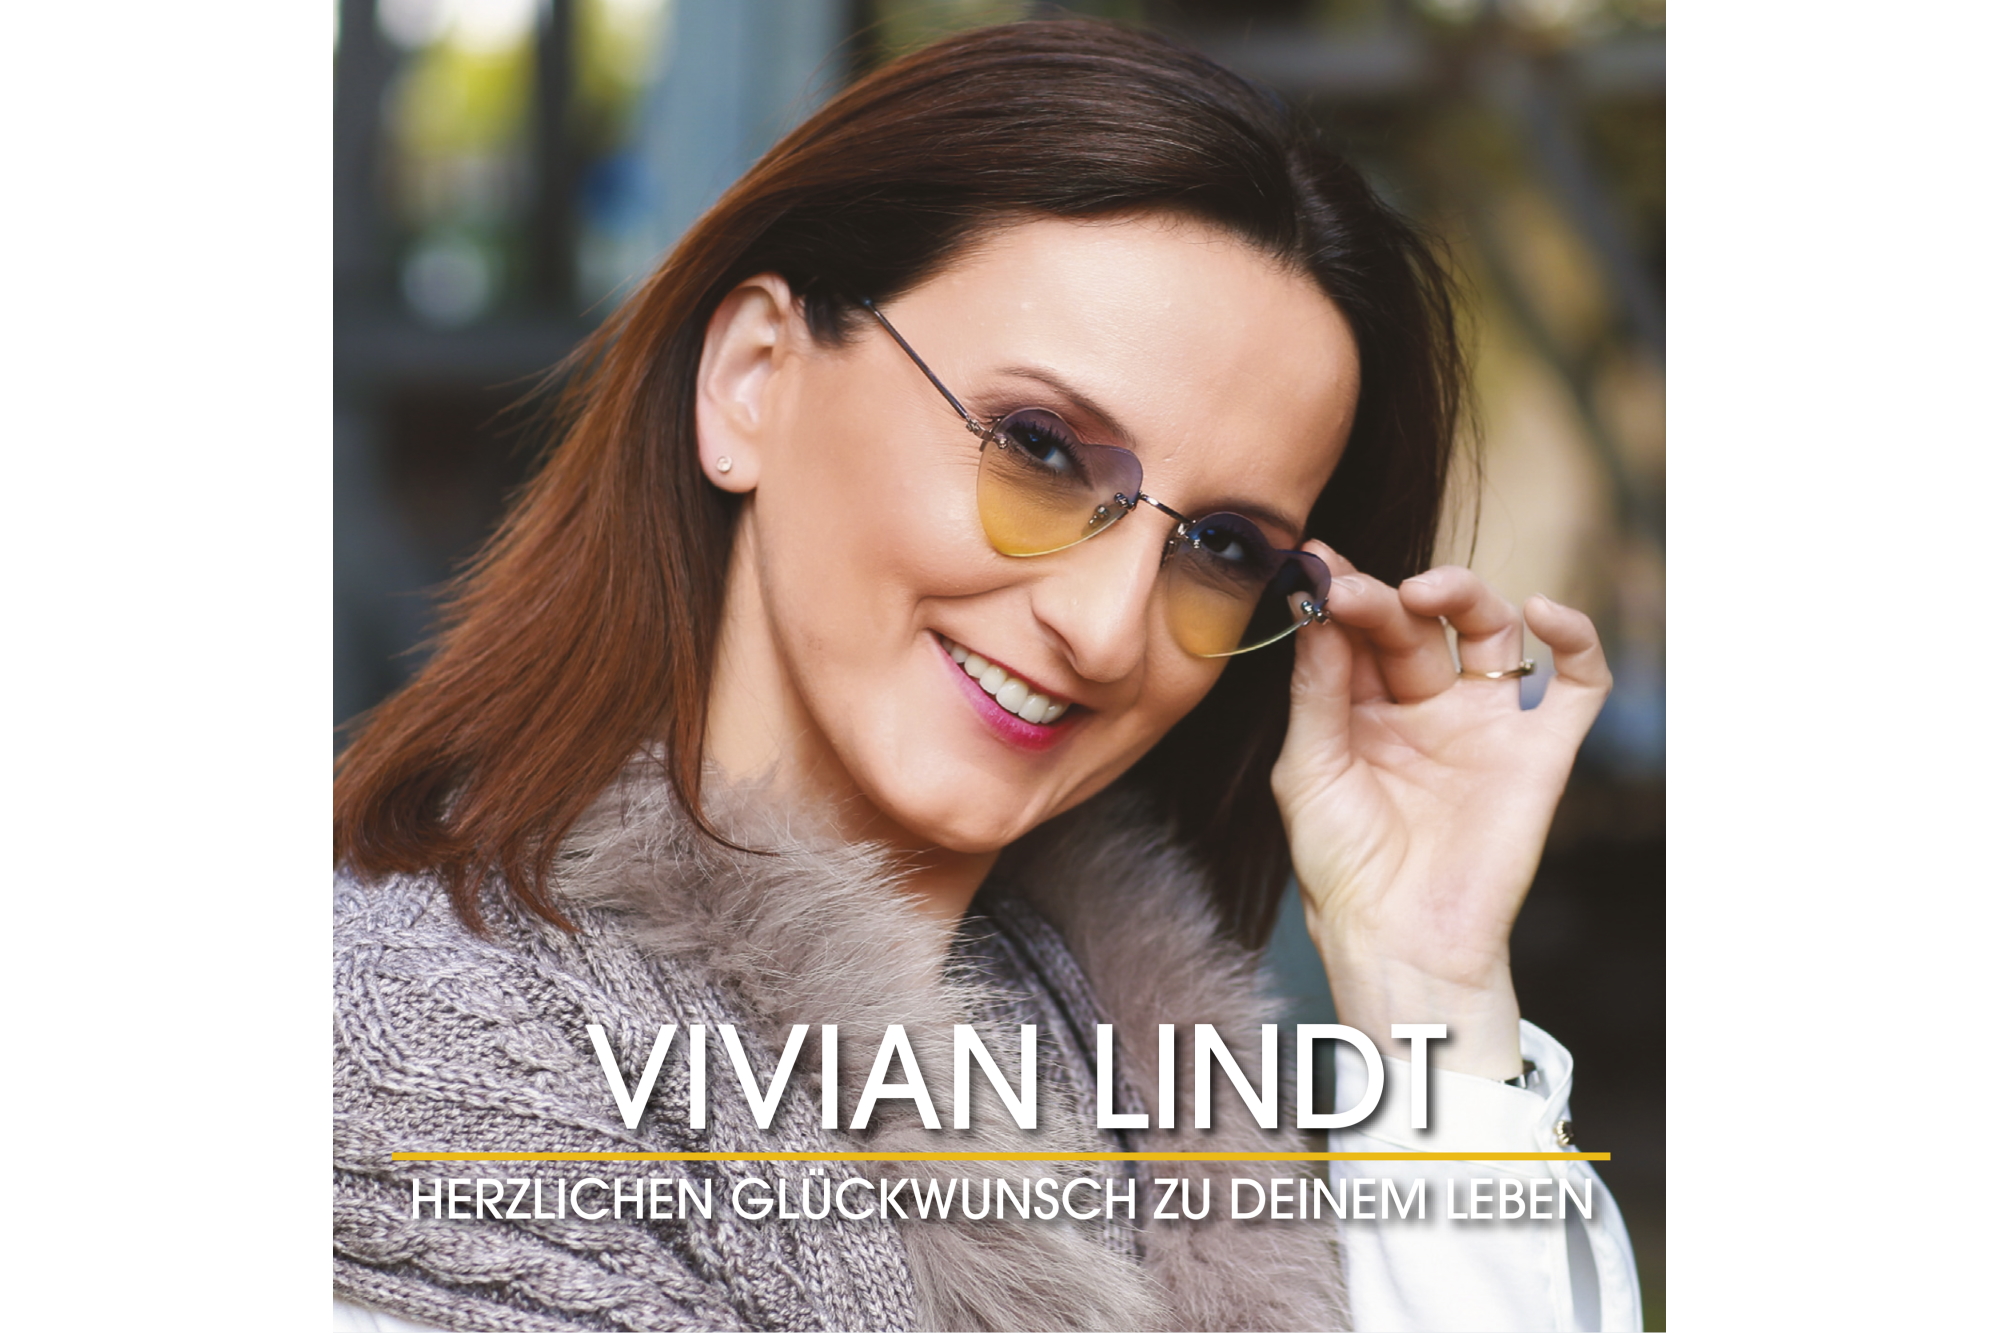 Vivian Lindt - Herzlichen Glückwunsch zu deinem Leben